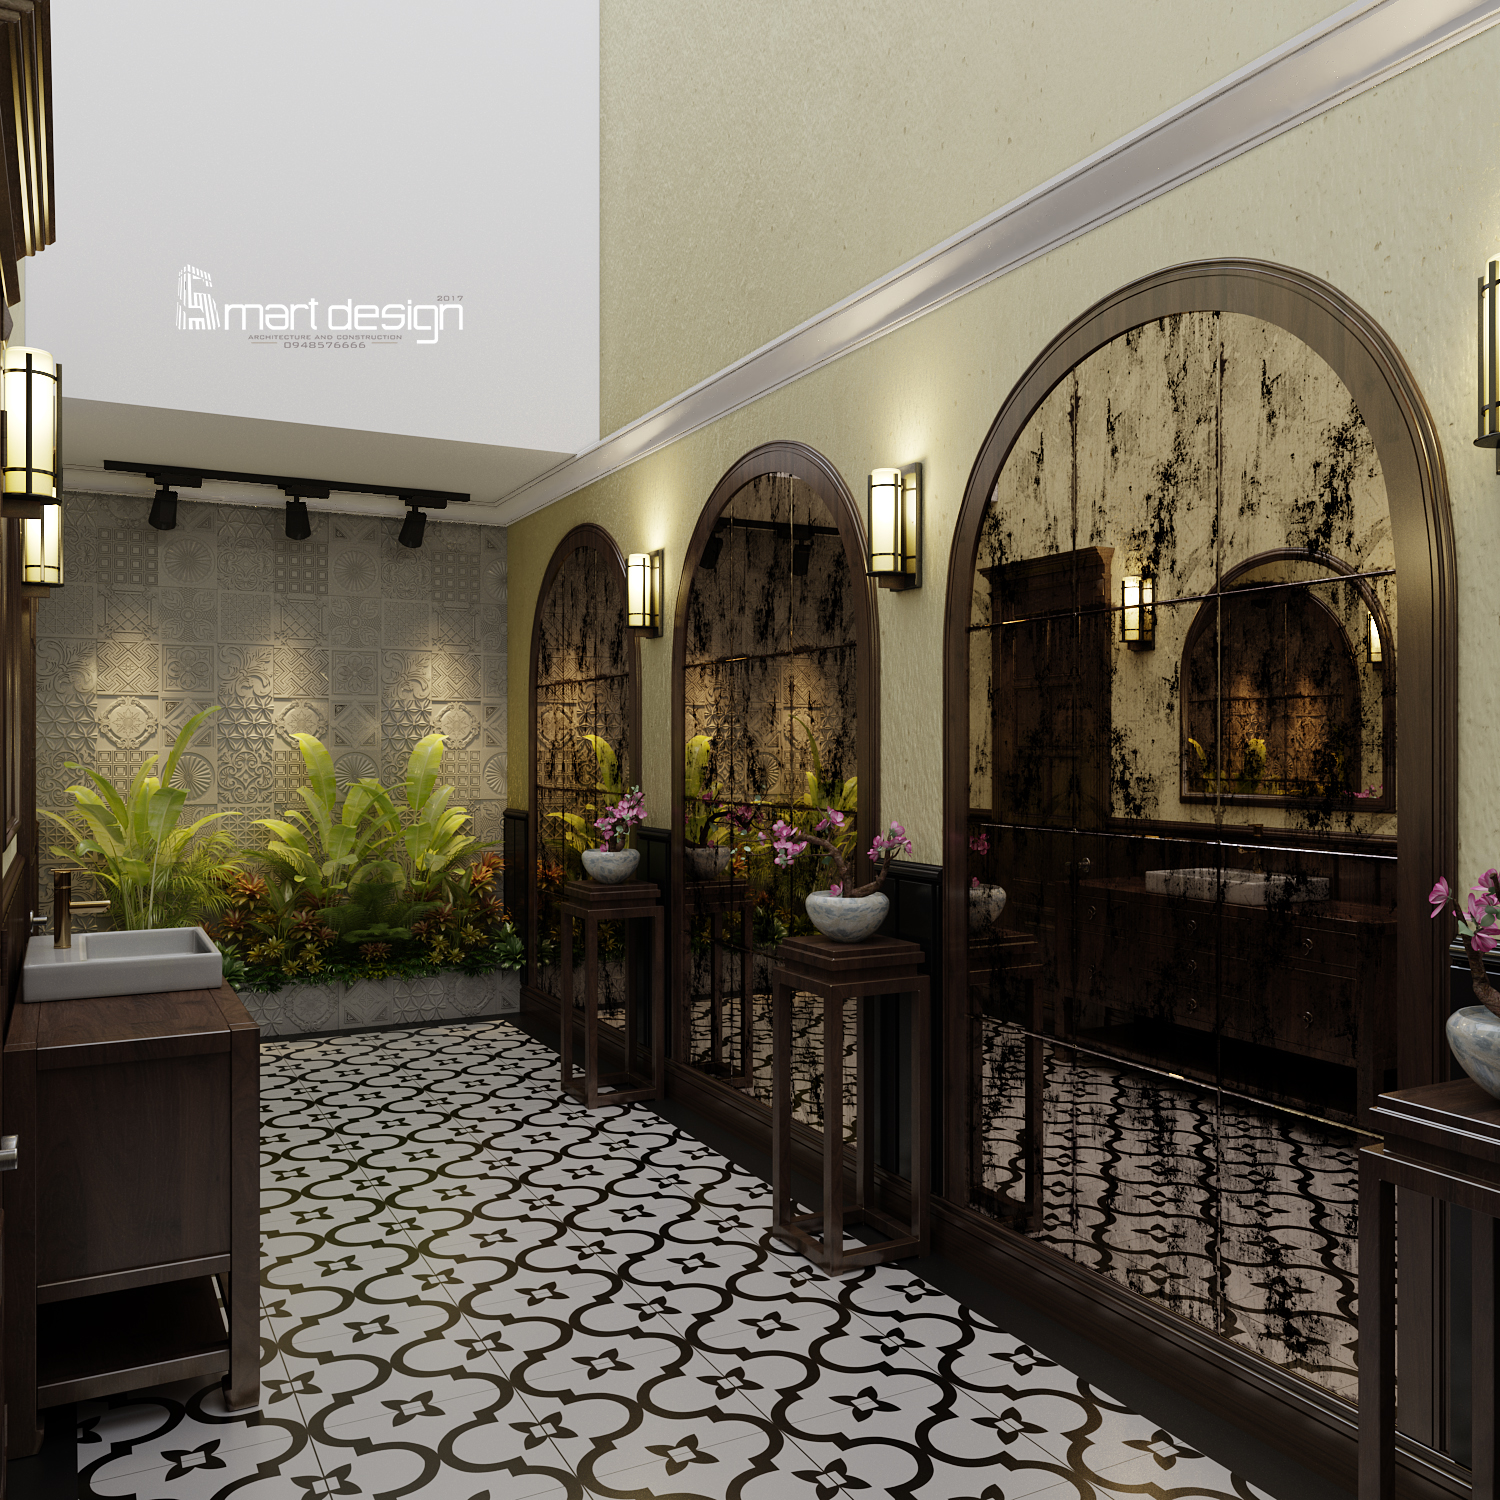 Thiết kế nội thất Nhà Hàng Phong cách Indochine là điểm nhấn đặc biệt giúp cho không gian nhà hàng trở nên độc đáo và đầy ấn tượng. Hãy đến và thưởng thức món ăn trong một không gian thật tuyệt vời!